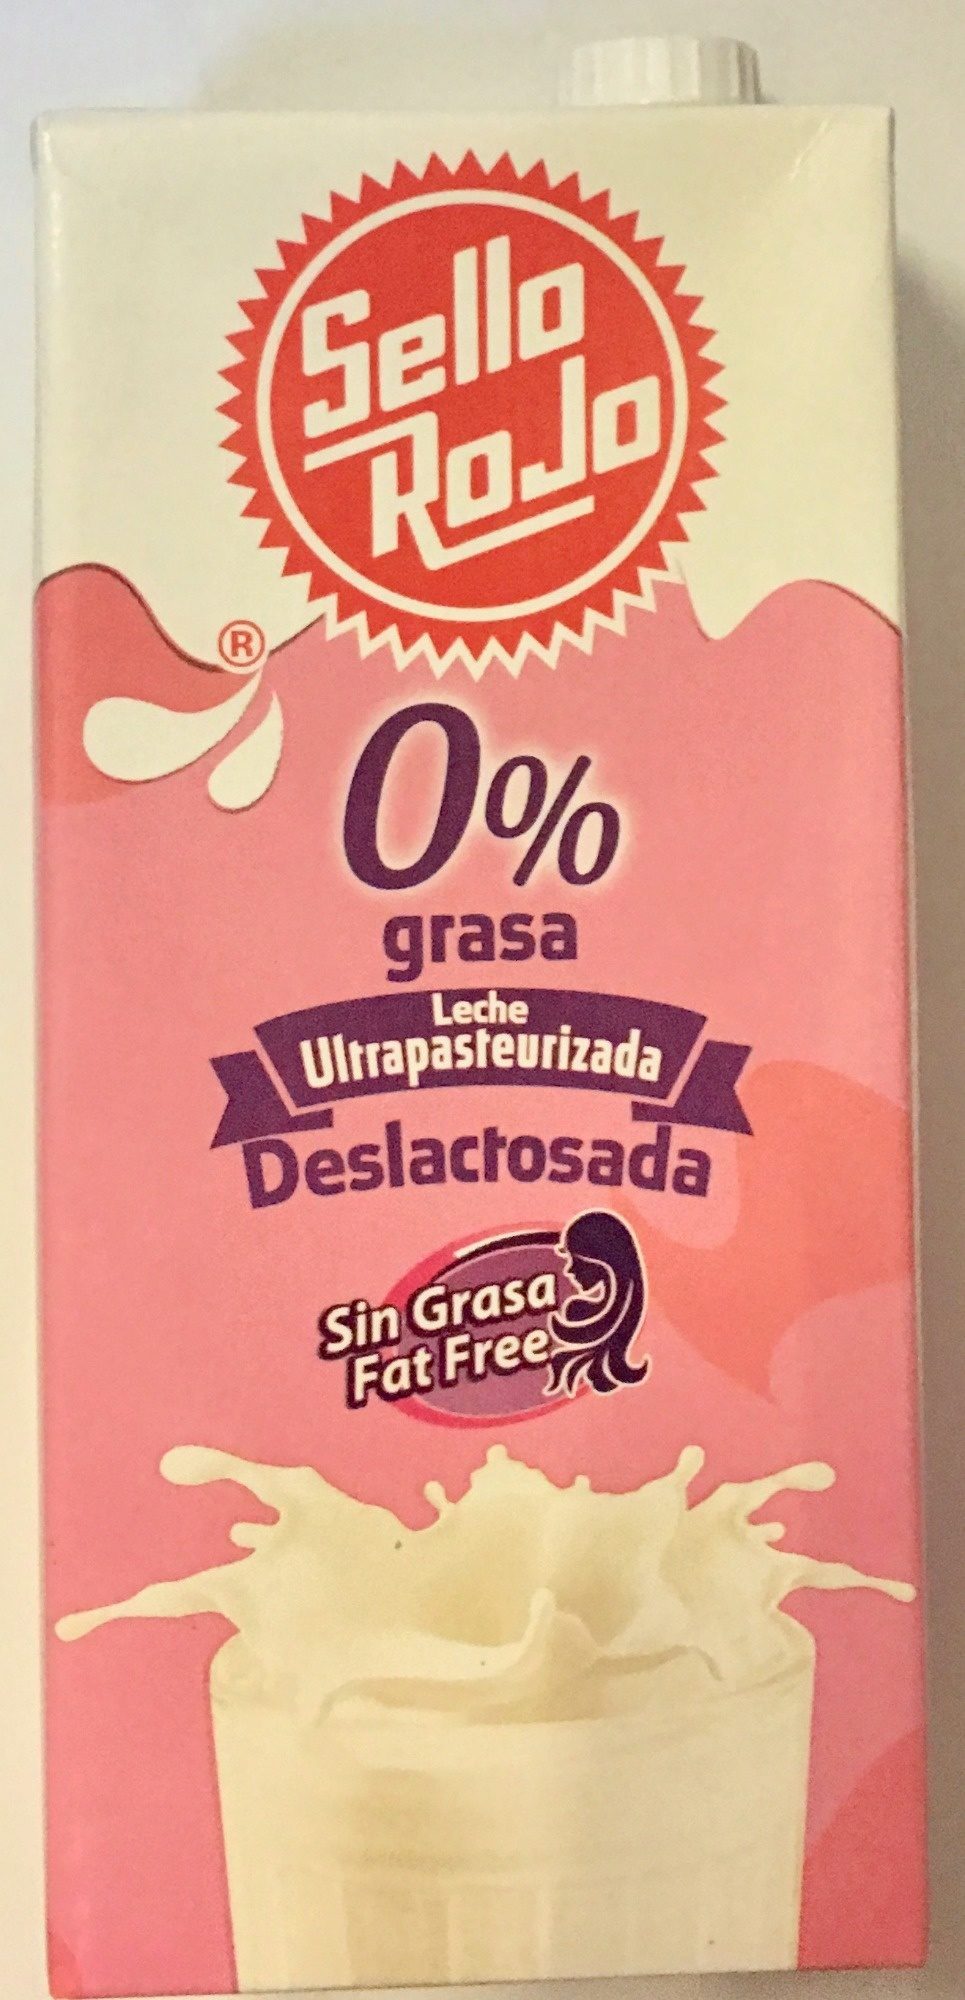 Sello Rojo Deslactosada 0% grasa - Producto